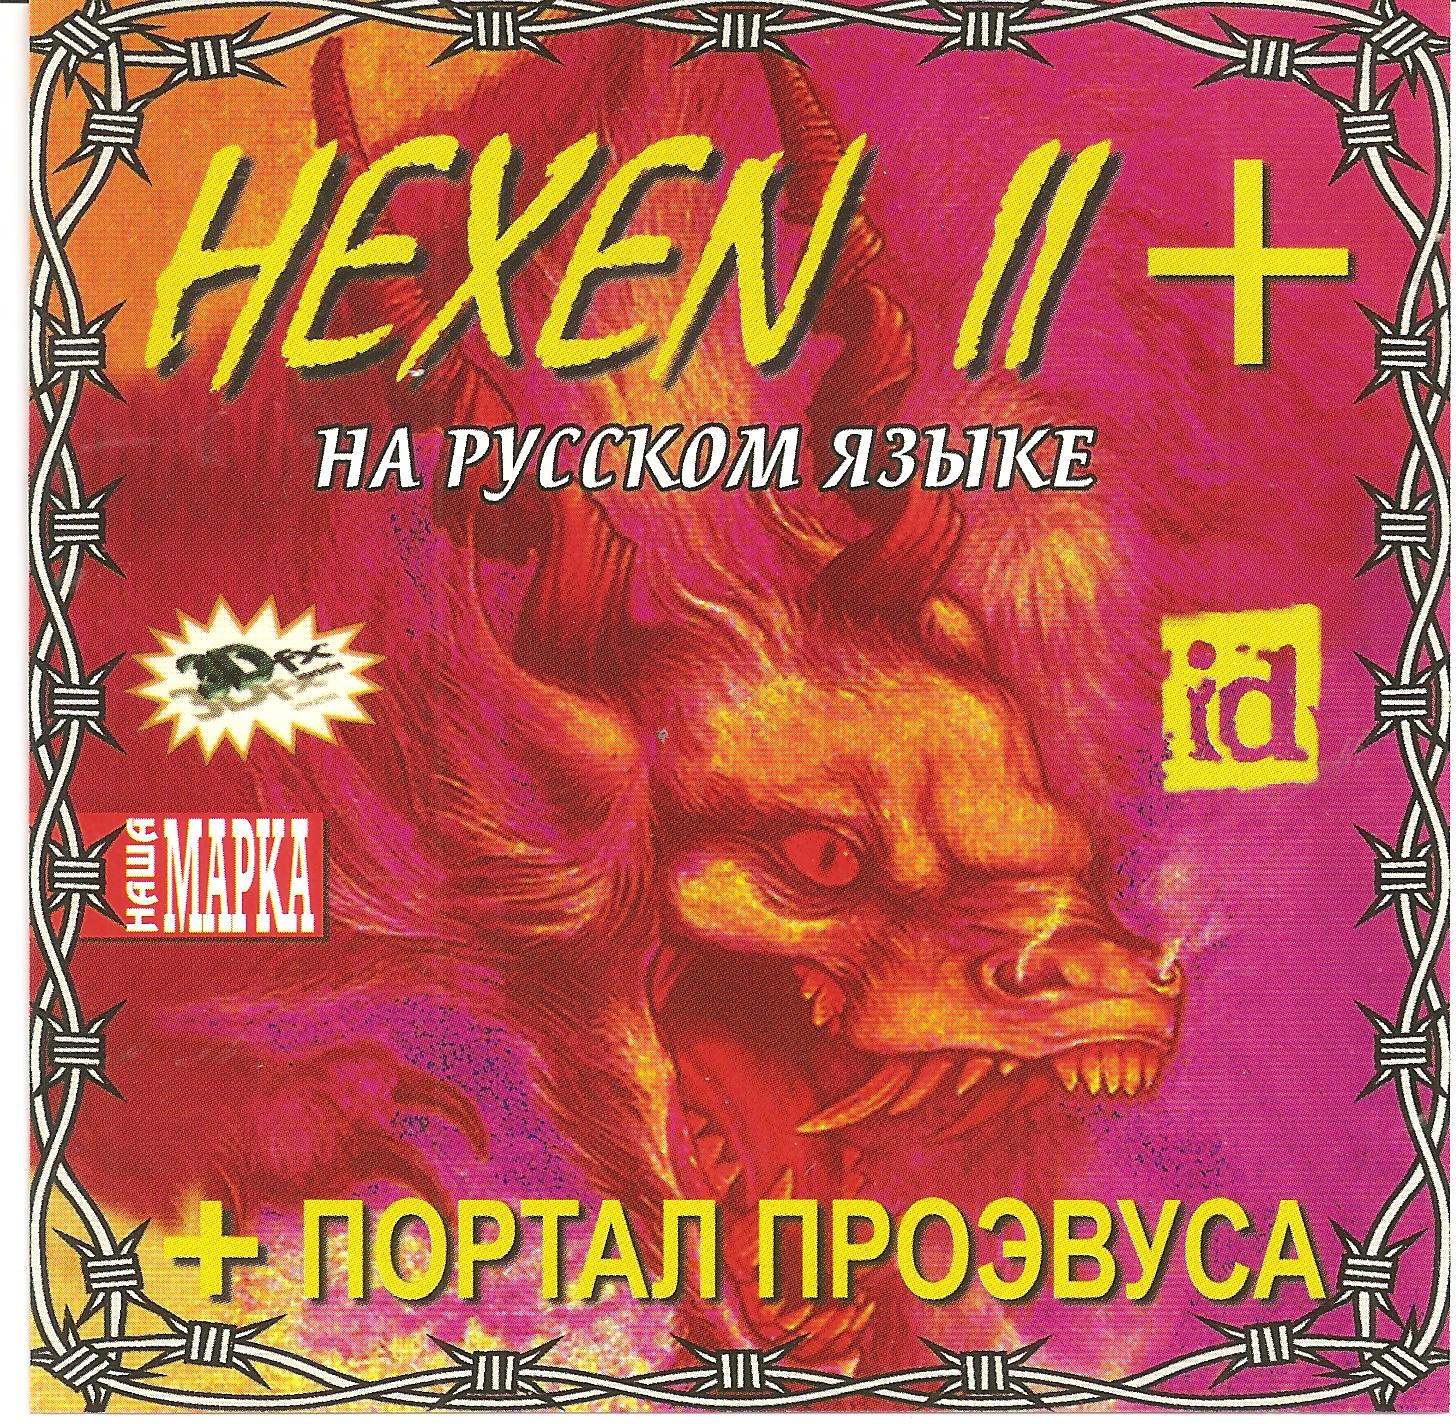 Hexen 2 mission pack portal of praevus фото 5